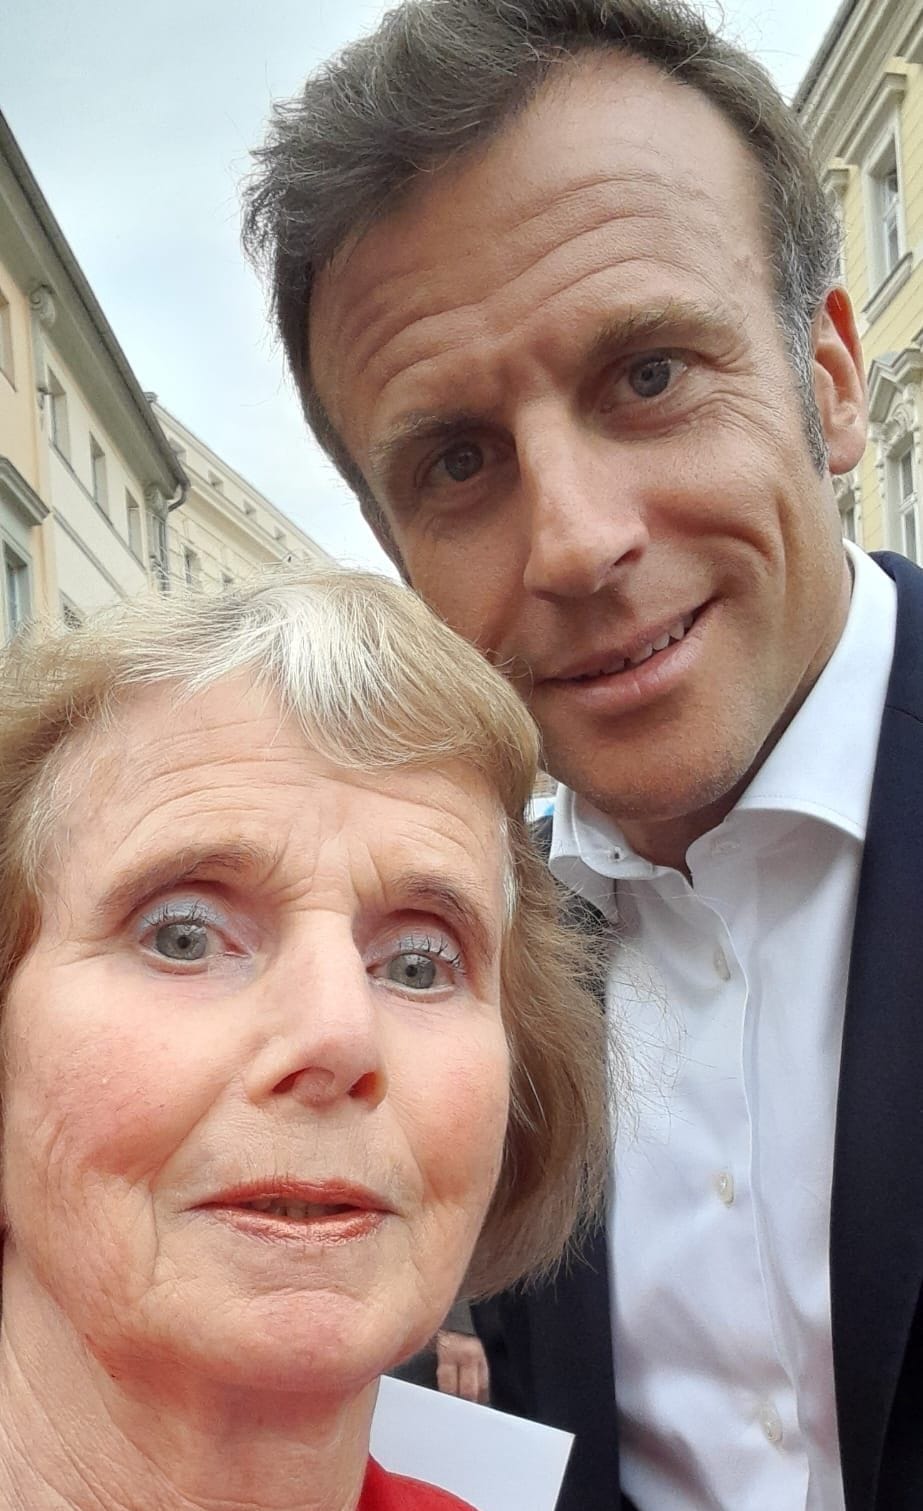 Evelyn Haupt und der Präsident: Macron nahm das Selfie auf.